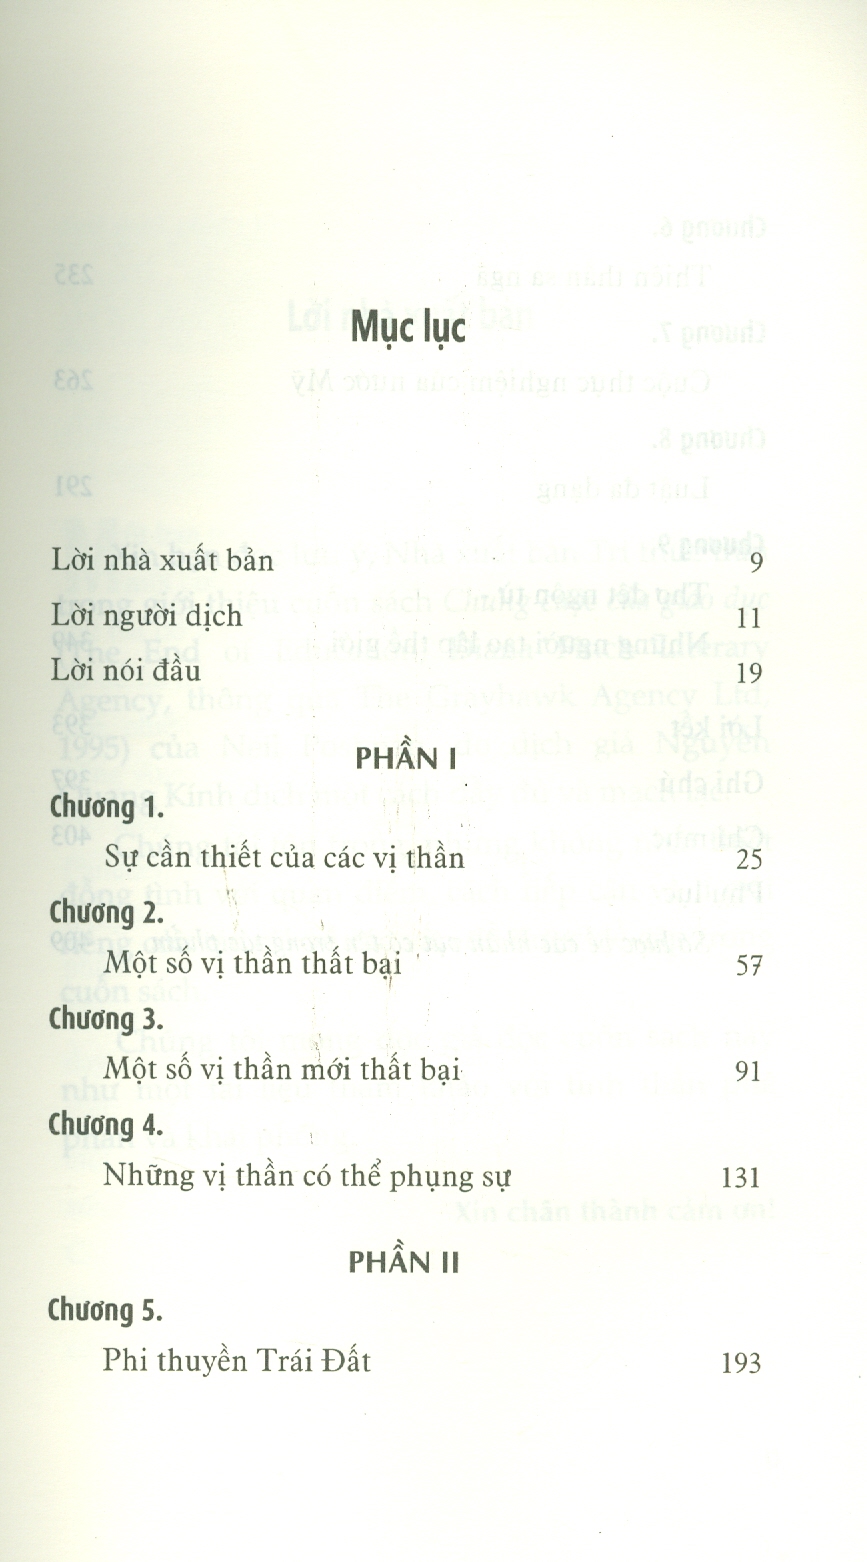 Chung CUộc Của Giáo Dục - Neil Postman - Nguyễn Quang Kính dịch - (bìa mềm)